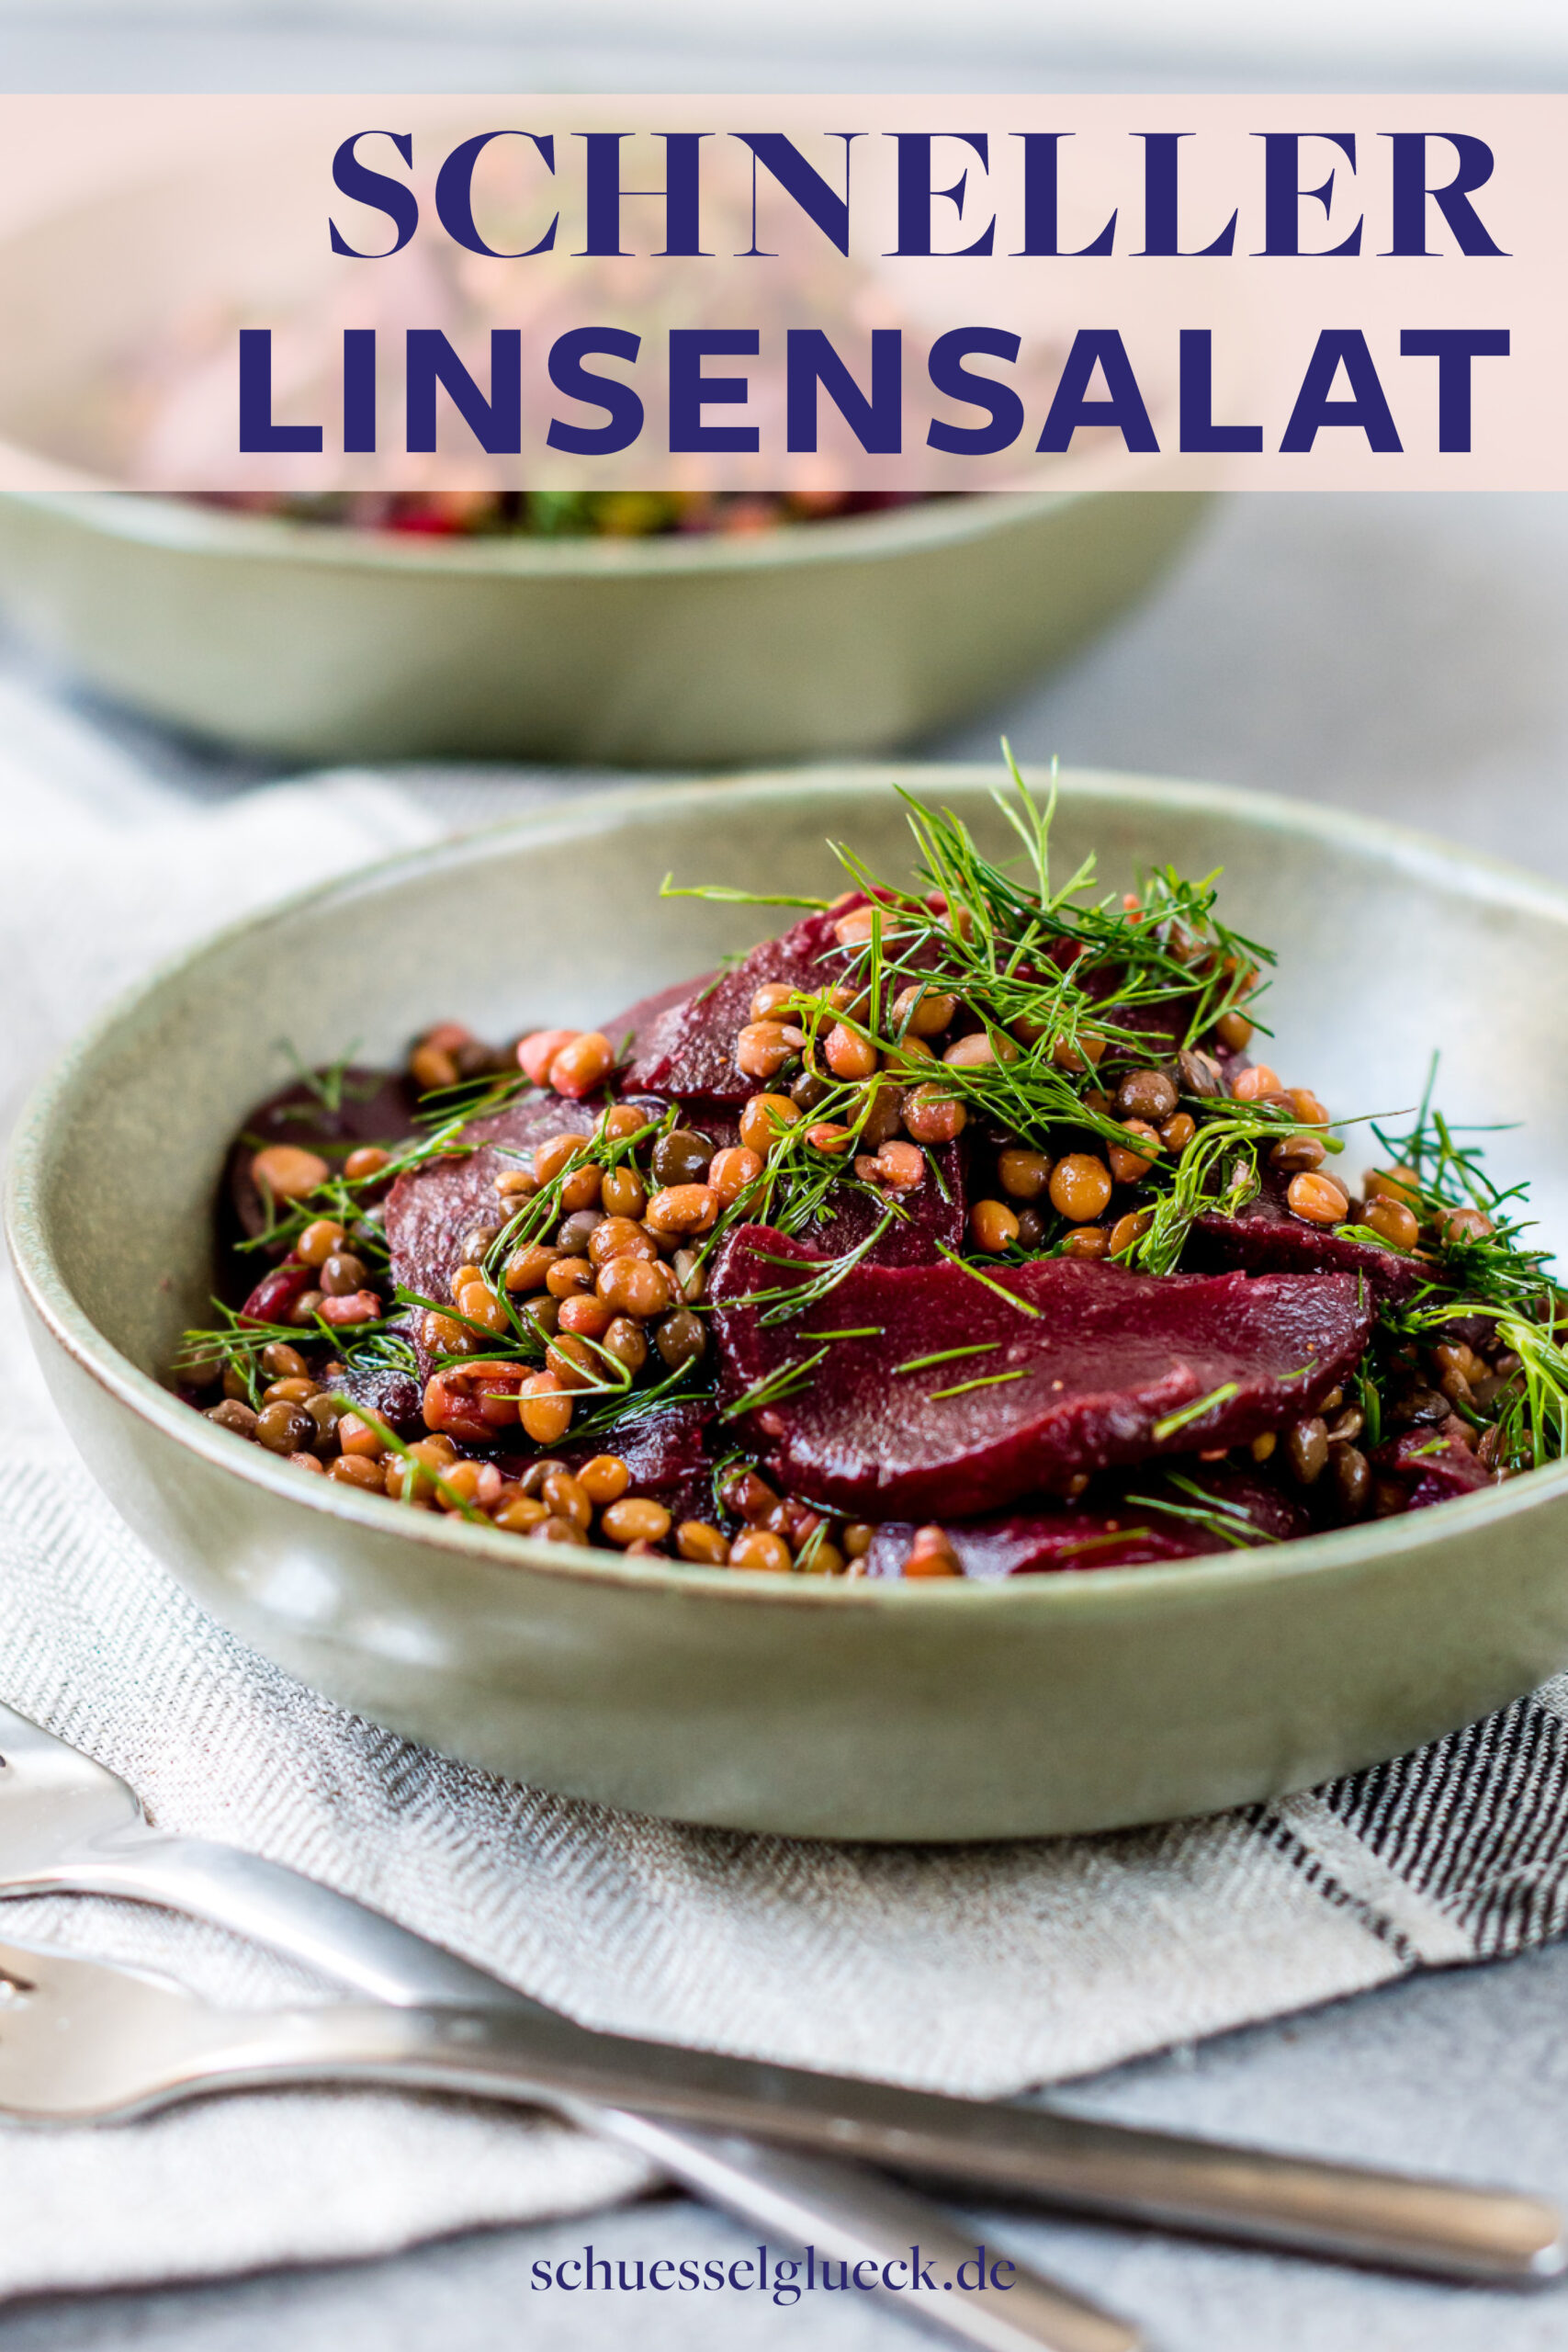 Rote Bete Salat mit Linsen und Dill – Hit aus dem Vorrat